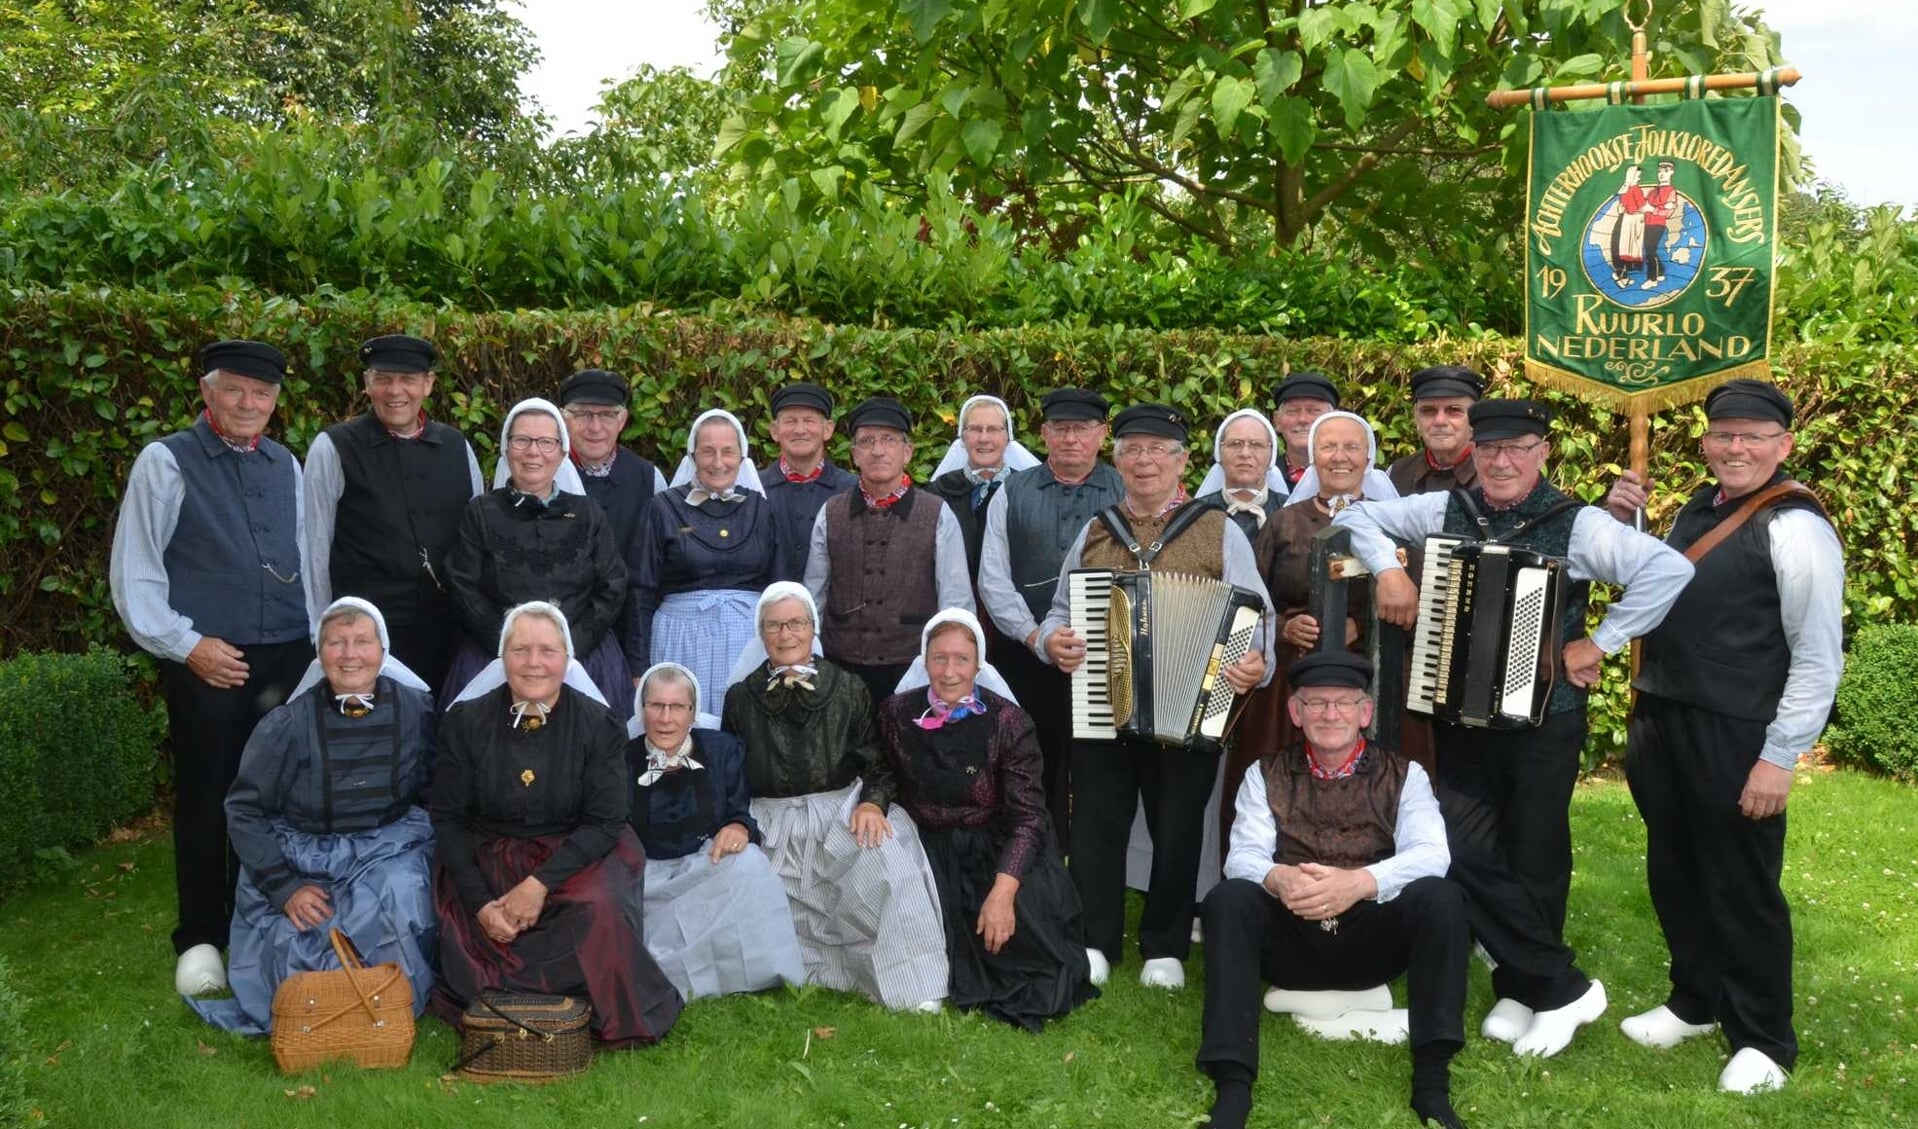 De organisatie van de Berkelland Folkloremiddag 2020 is in handen van de Achterhookse Folkloredansers uit Ruurlo. Foto: PR. 